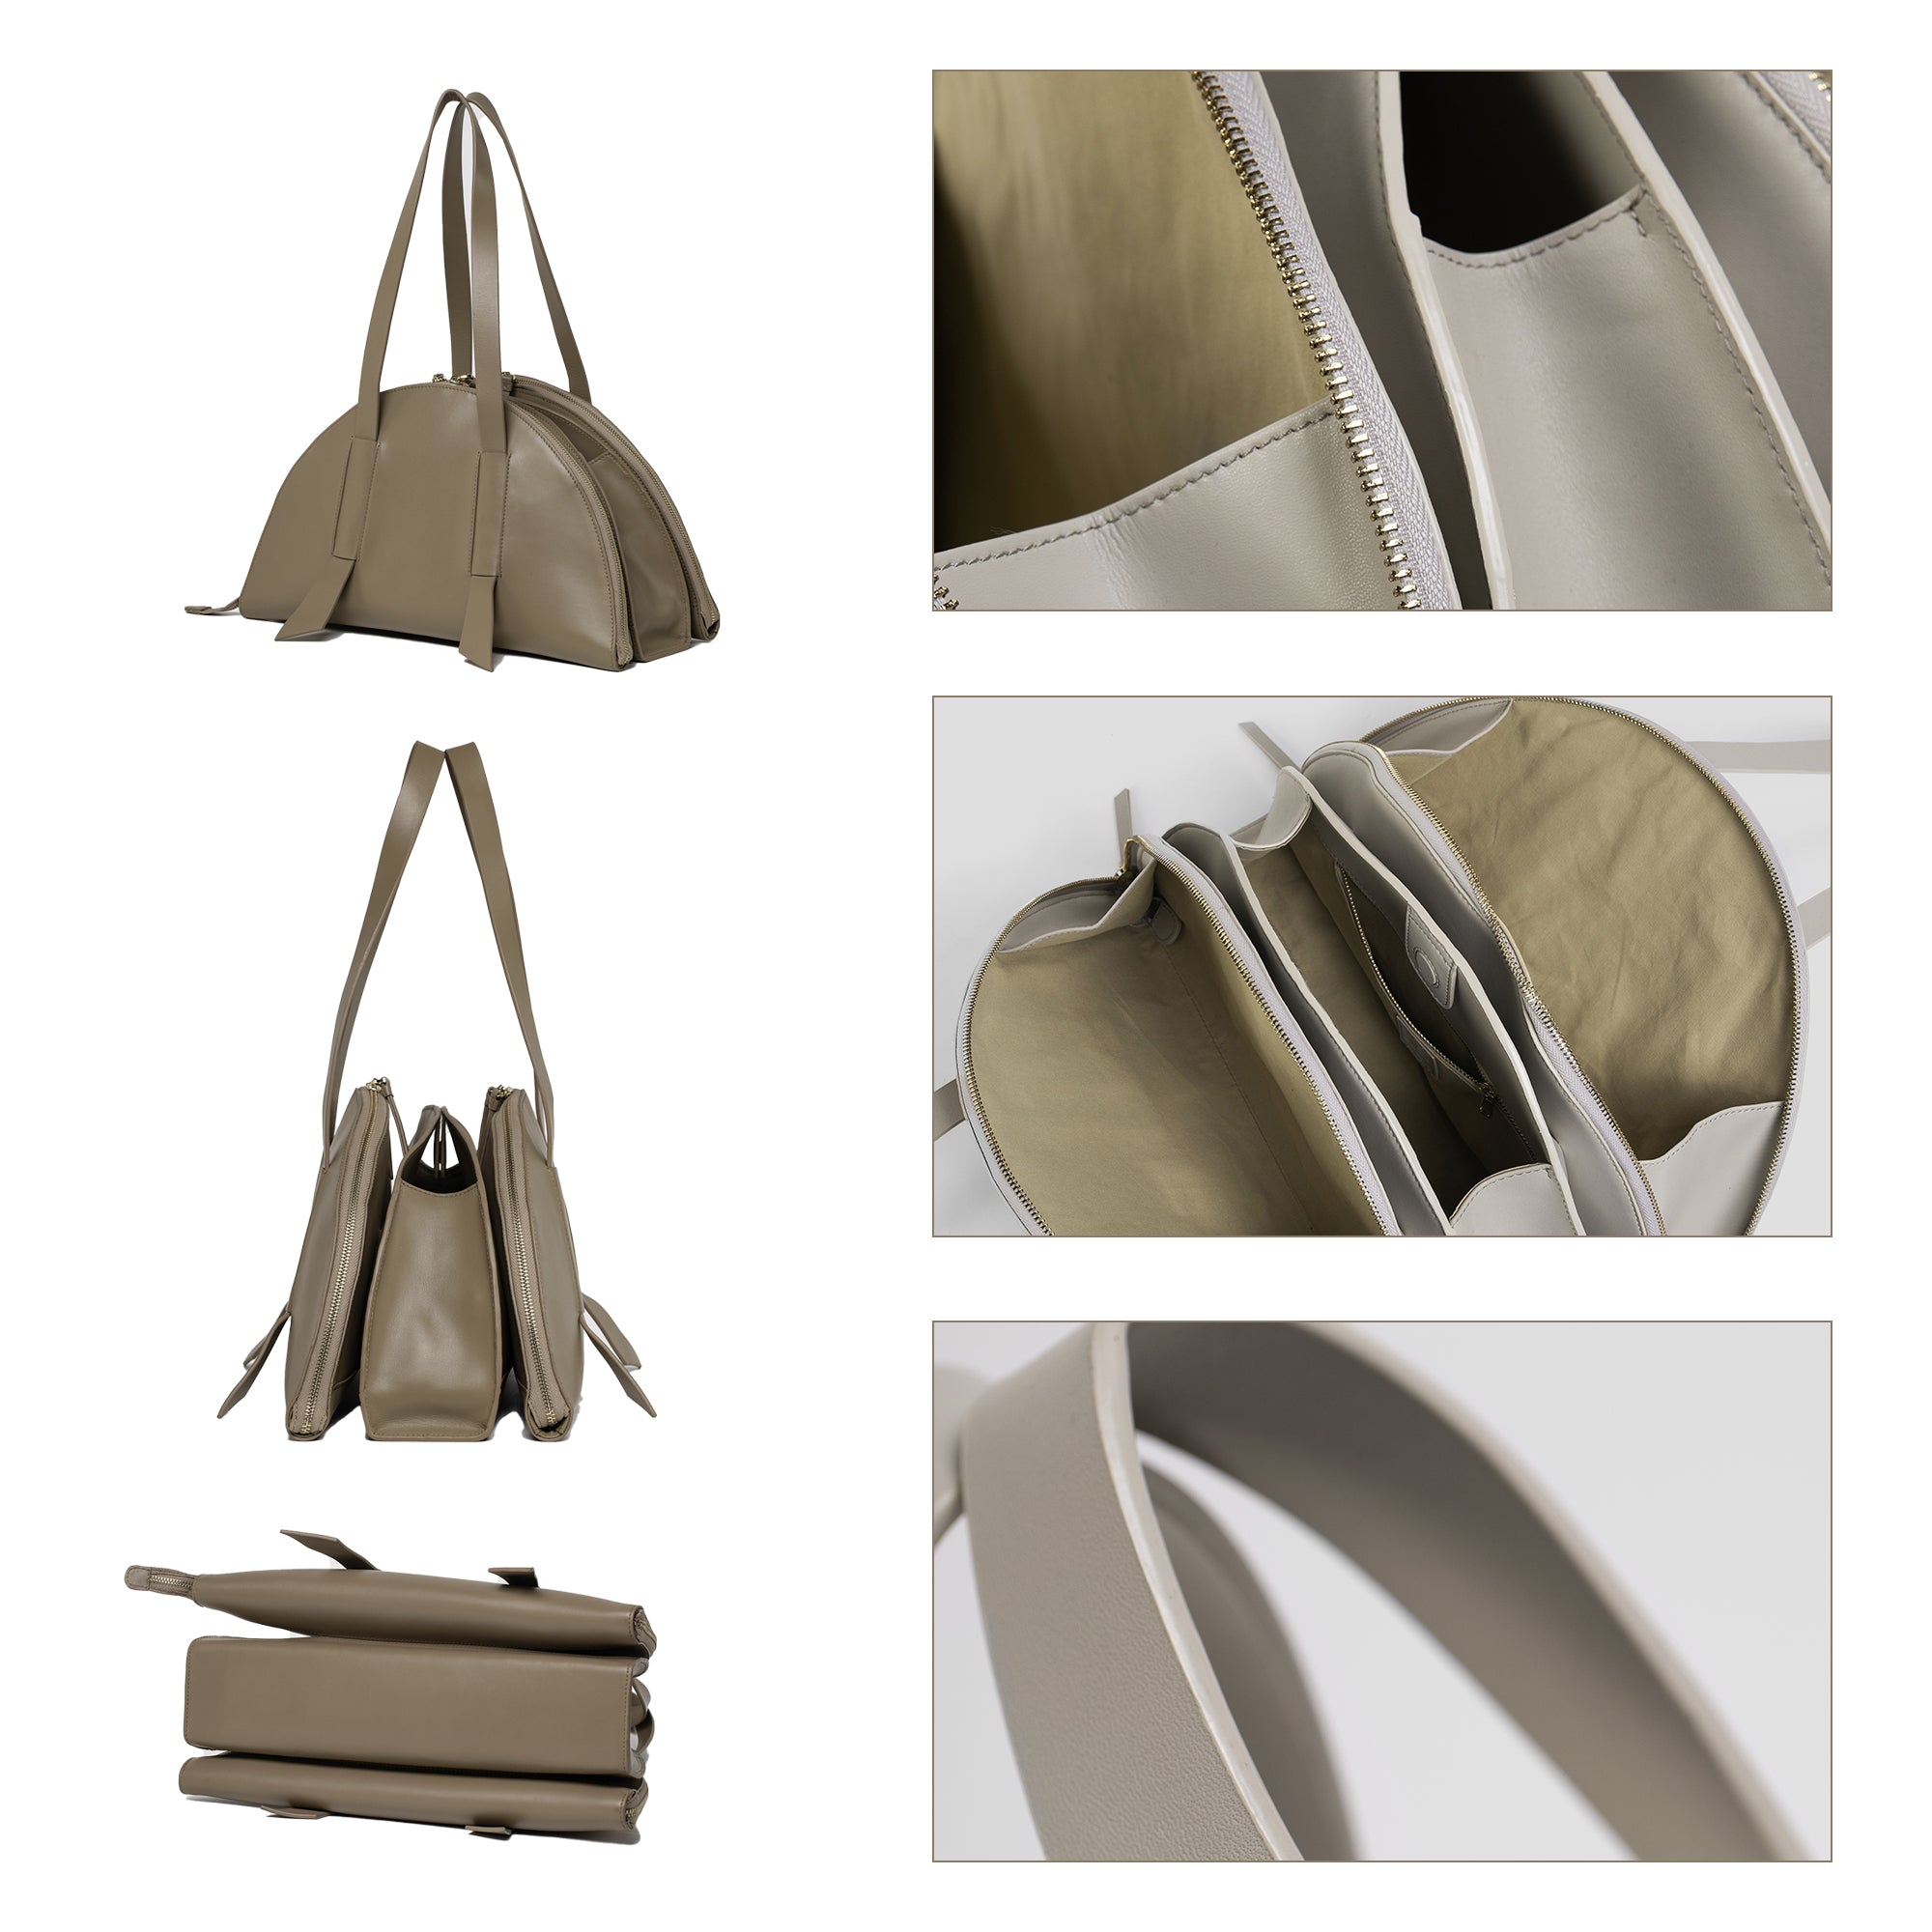 DIY Bag Kits - Original Design Niche Semicircle Armpit Handbag